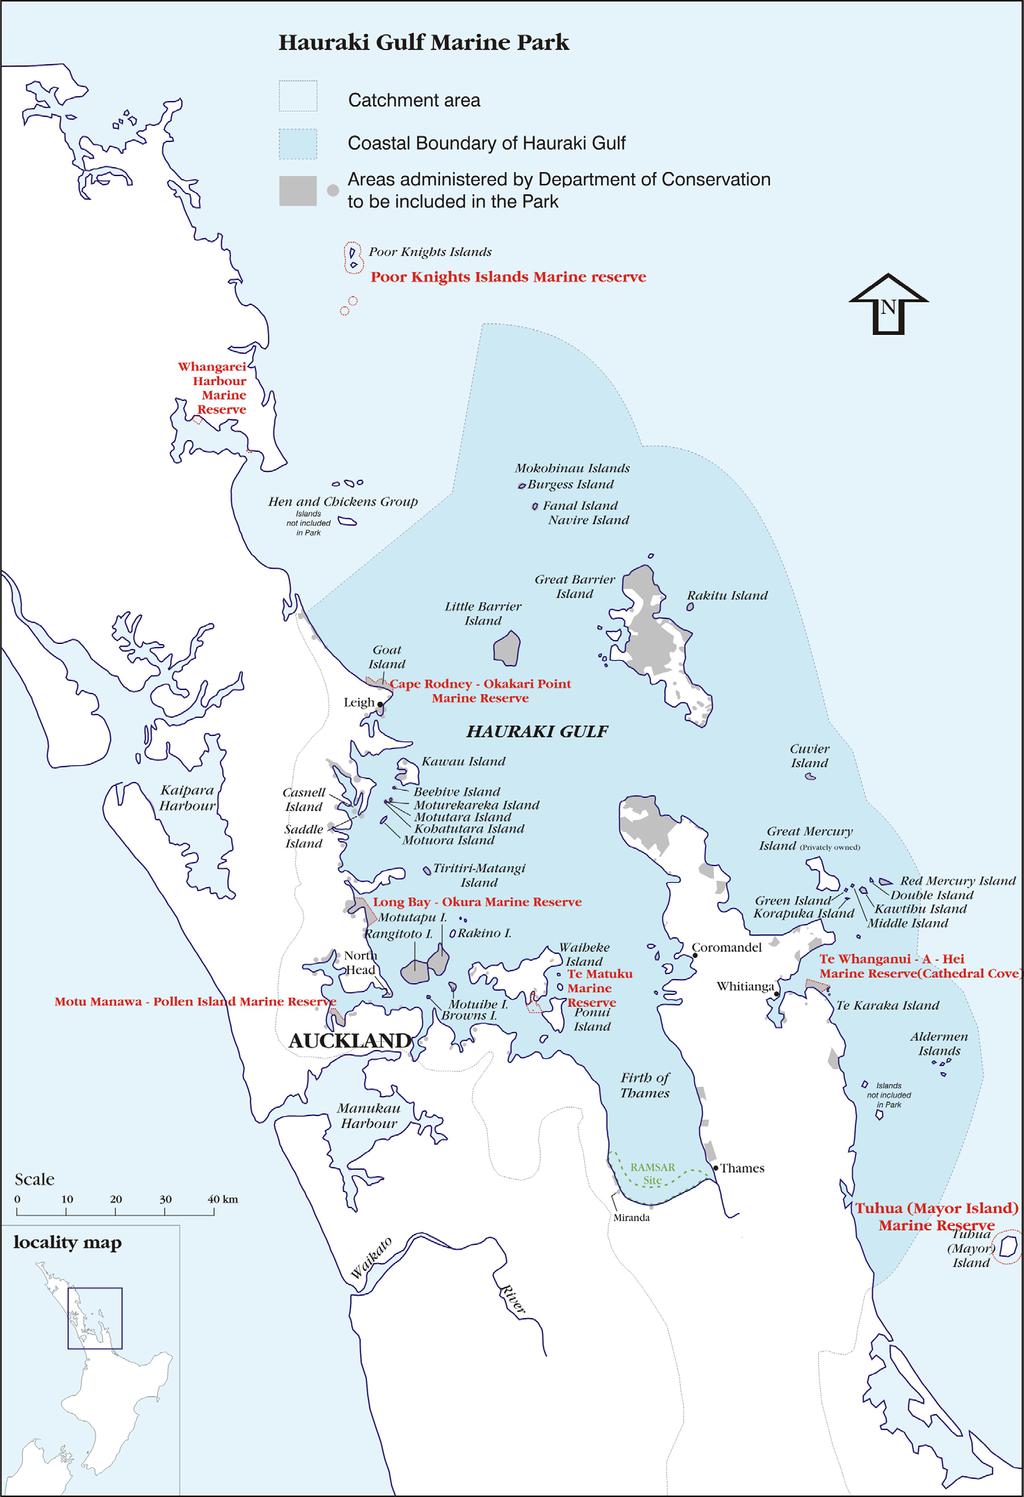 Case study Hauraki Gulf Marine Park: An integrated approach The Hauraki Gulf Marine Park covers 1.